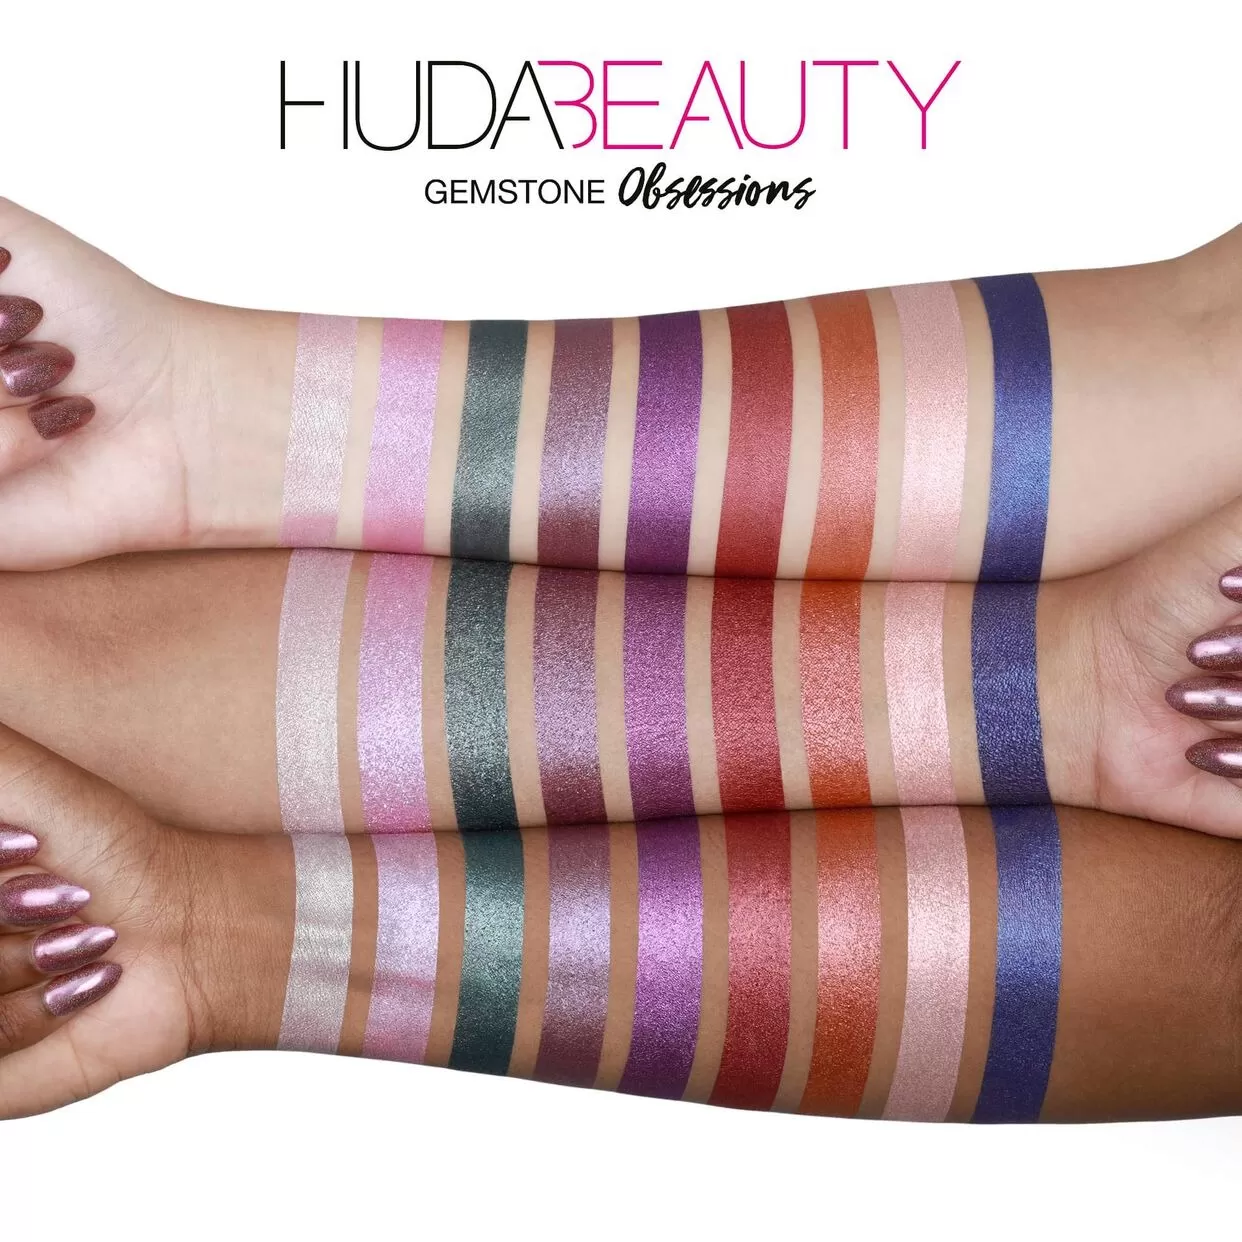 شید رنگ پالت سایه هدی بیوتی Huda beauty gemstone obsessions eyeshadow palette اصل + (تخفیف)